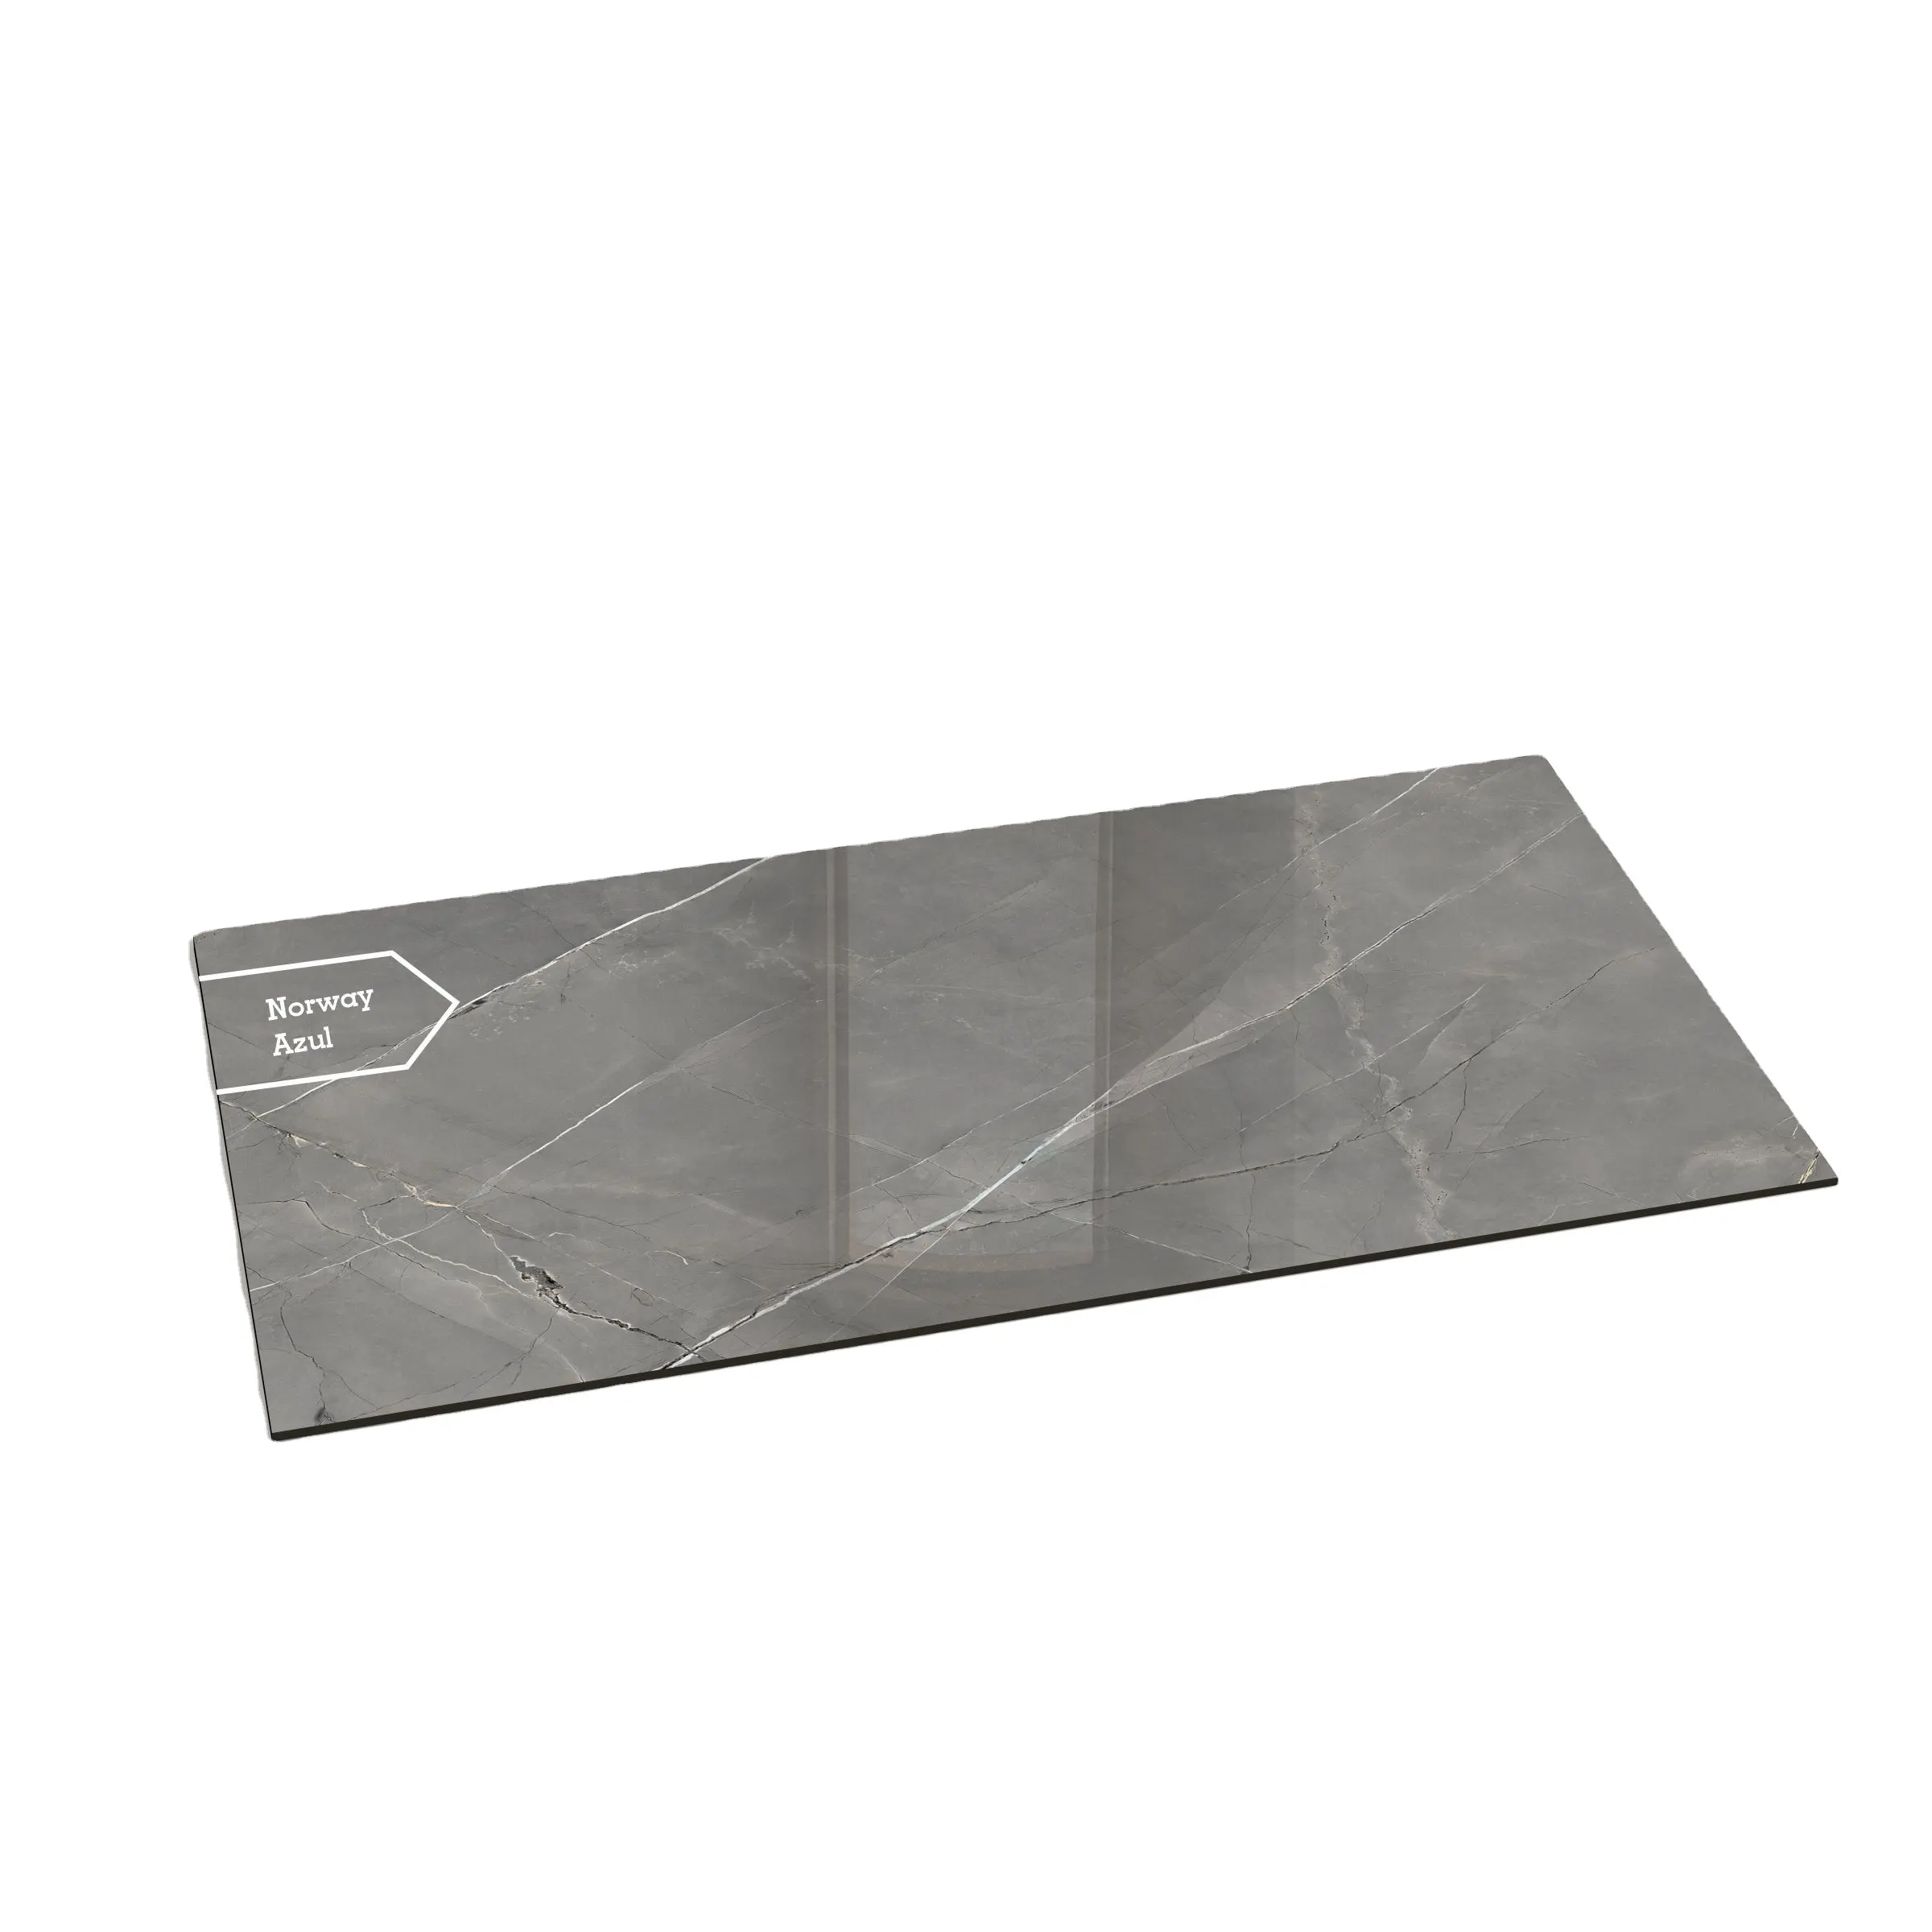 Schlussverkauf Skytouch Bodenbelag und Wandverkleidung Design natürliche graue Marmorplatte-Fiegel für großes Projekt